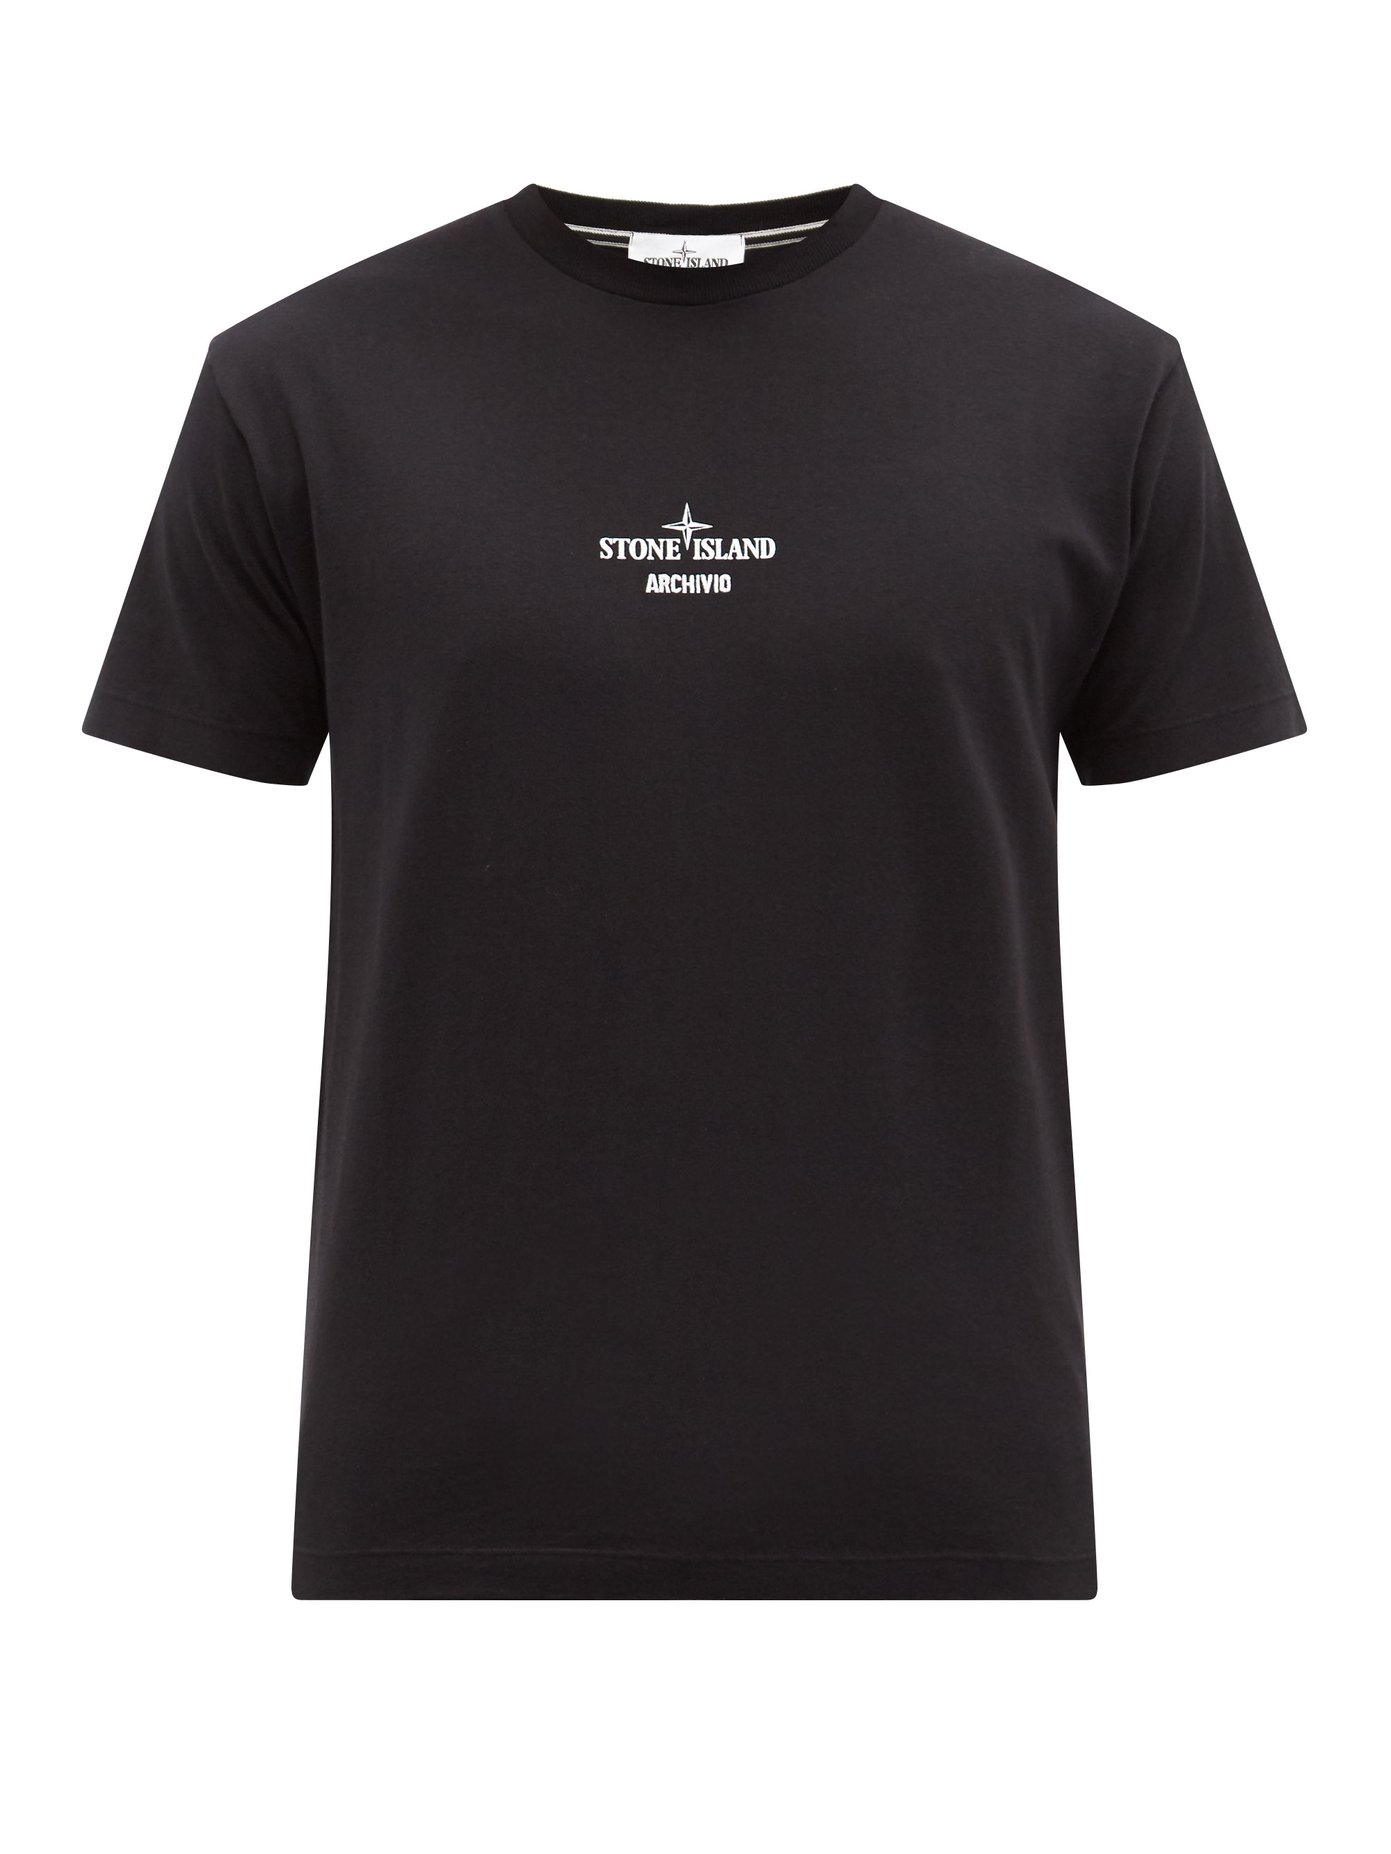 스톤 아일랜드 티셔츠 Stone Island Black Archivio logo-print cotton-jersey T-shirt